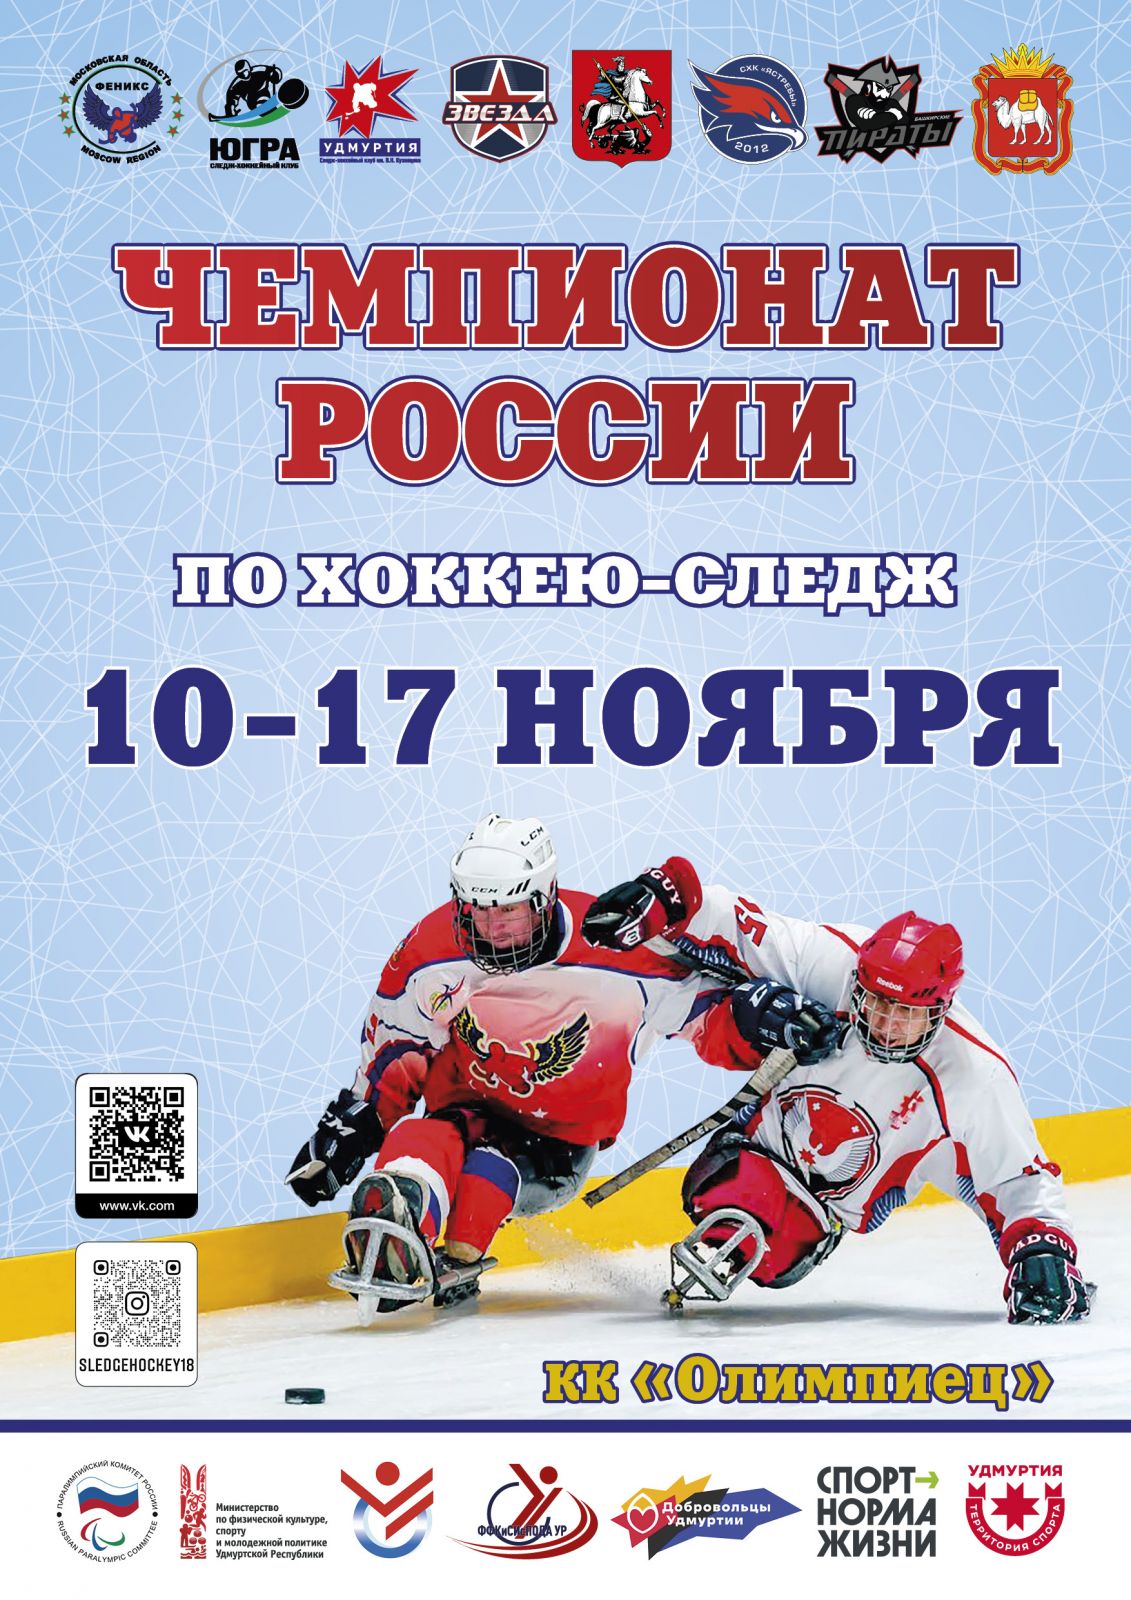 7 команд выйдут на лед 1 круга чемпионата России по следж-хоккею в Ижевске